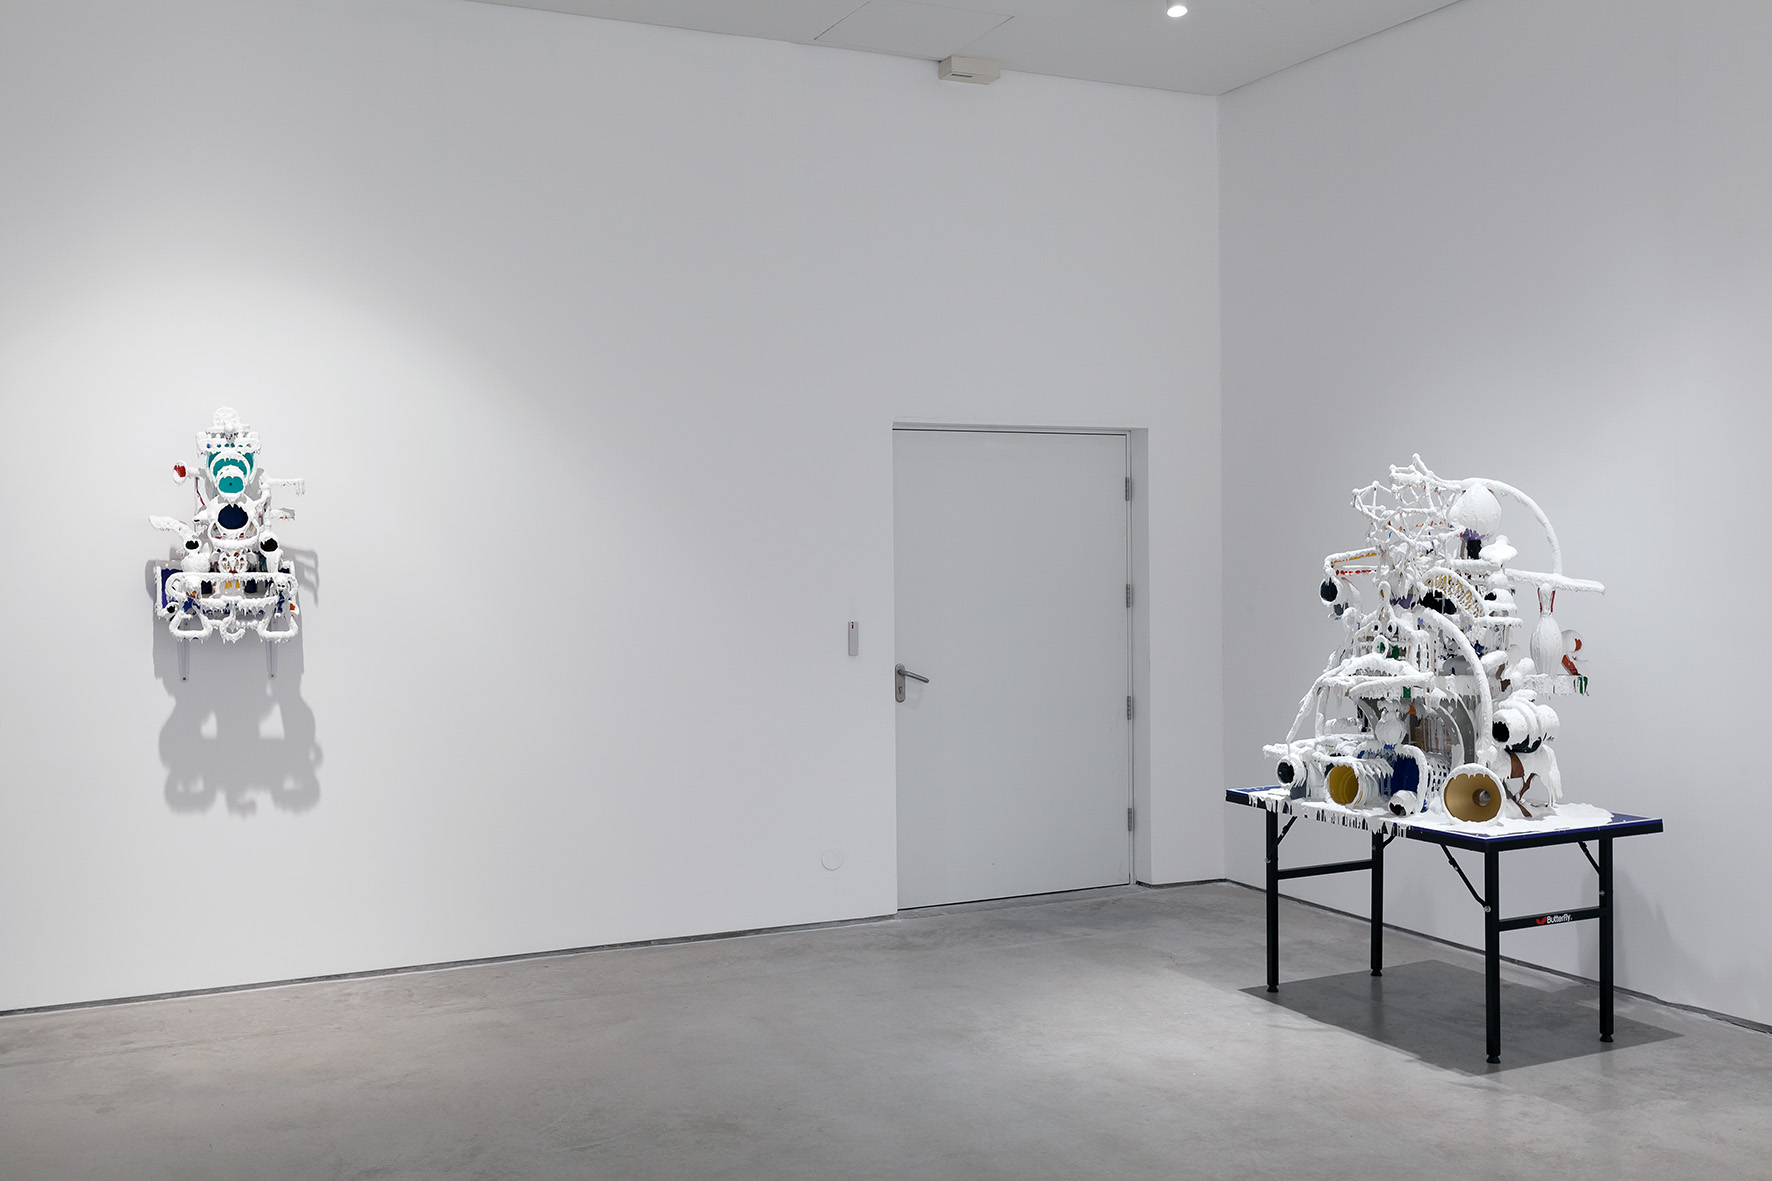 Teppei Kaneuji, Biały wyciek (Przedmioty nagromadzone nr 10), 2010, instalacja, 181 × 176 × 75 cm, © Teppei Kaneuji, dzięki uprzejmości ShugoArts